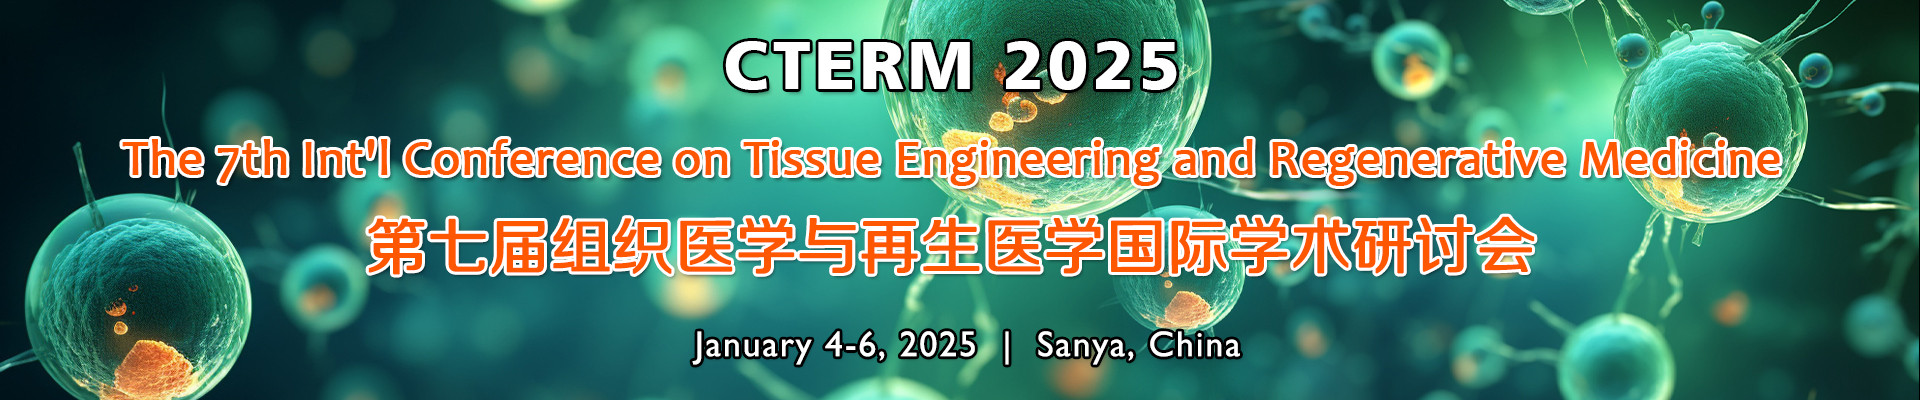 第七届组织医学与再生医学国际学术研讨会(CTERM 2025)